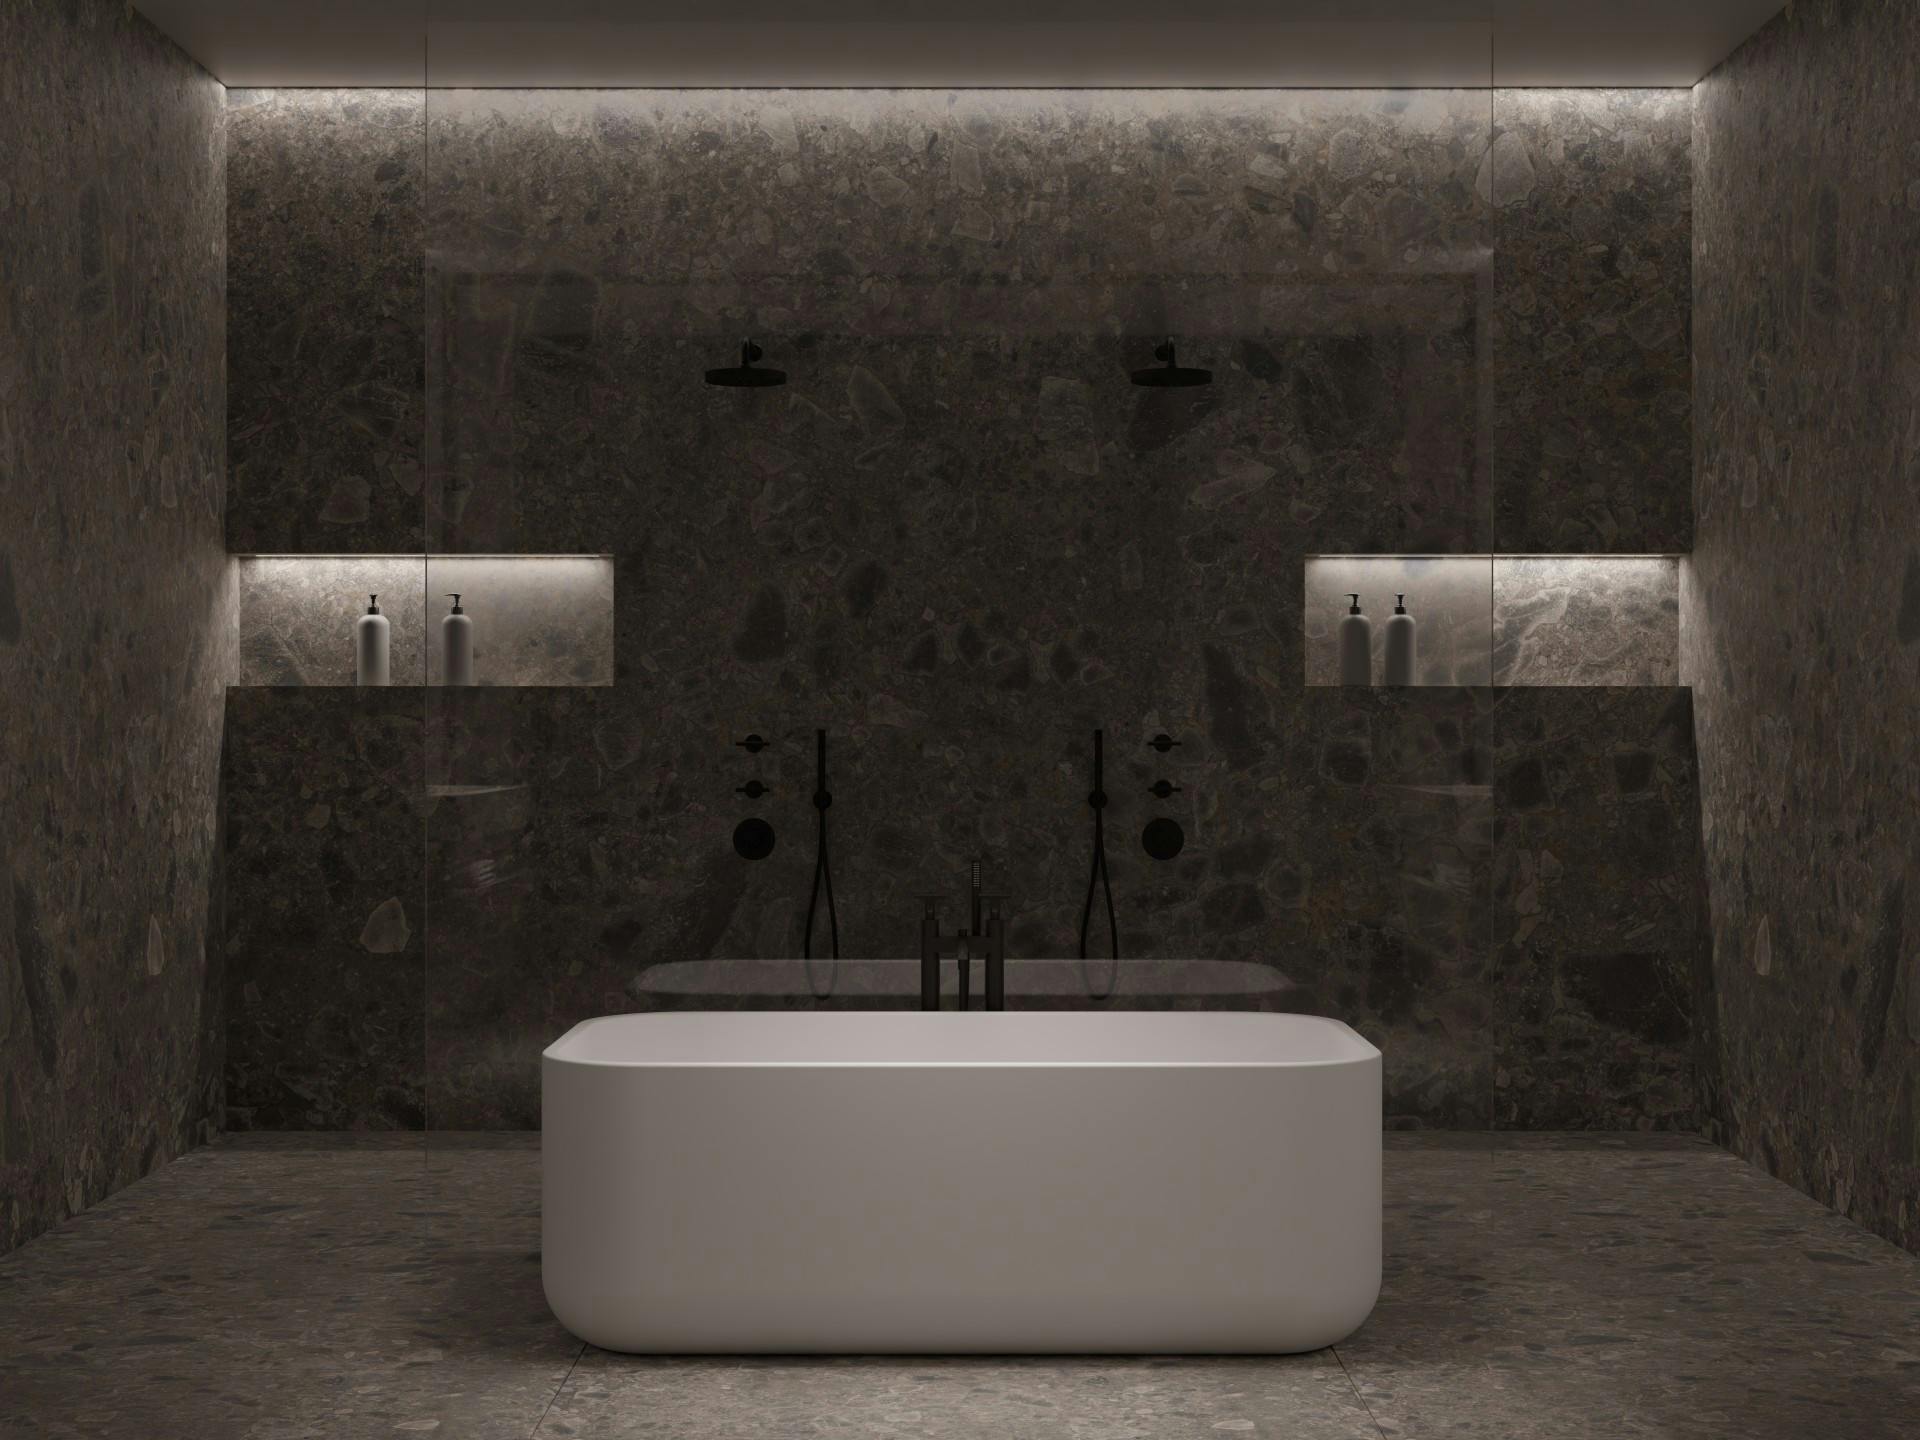 Numero immagine 34 della sezione corrente di The Cave: a bathroom designed by Colin Seah that pays homage to primitive rituals di Cosentino Italia